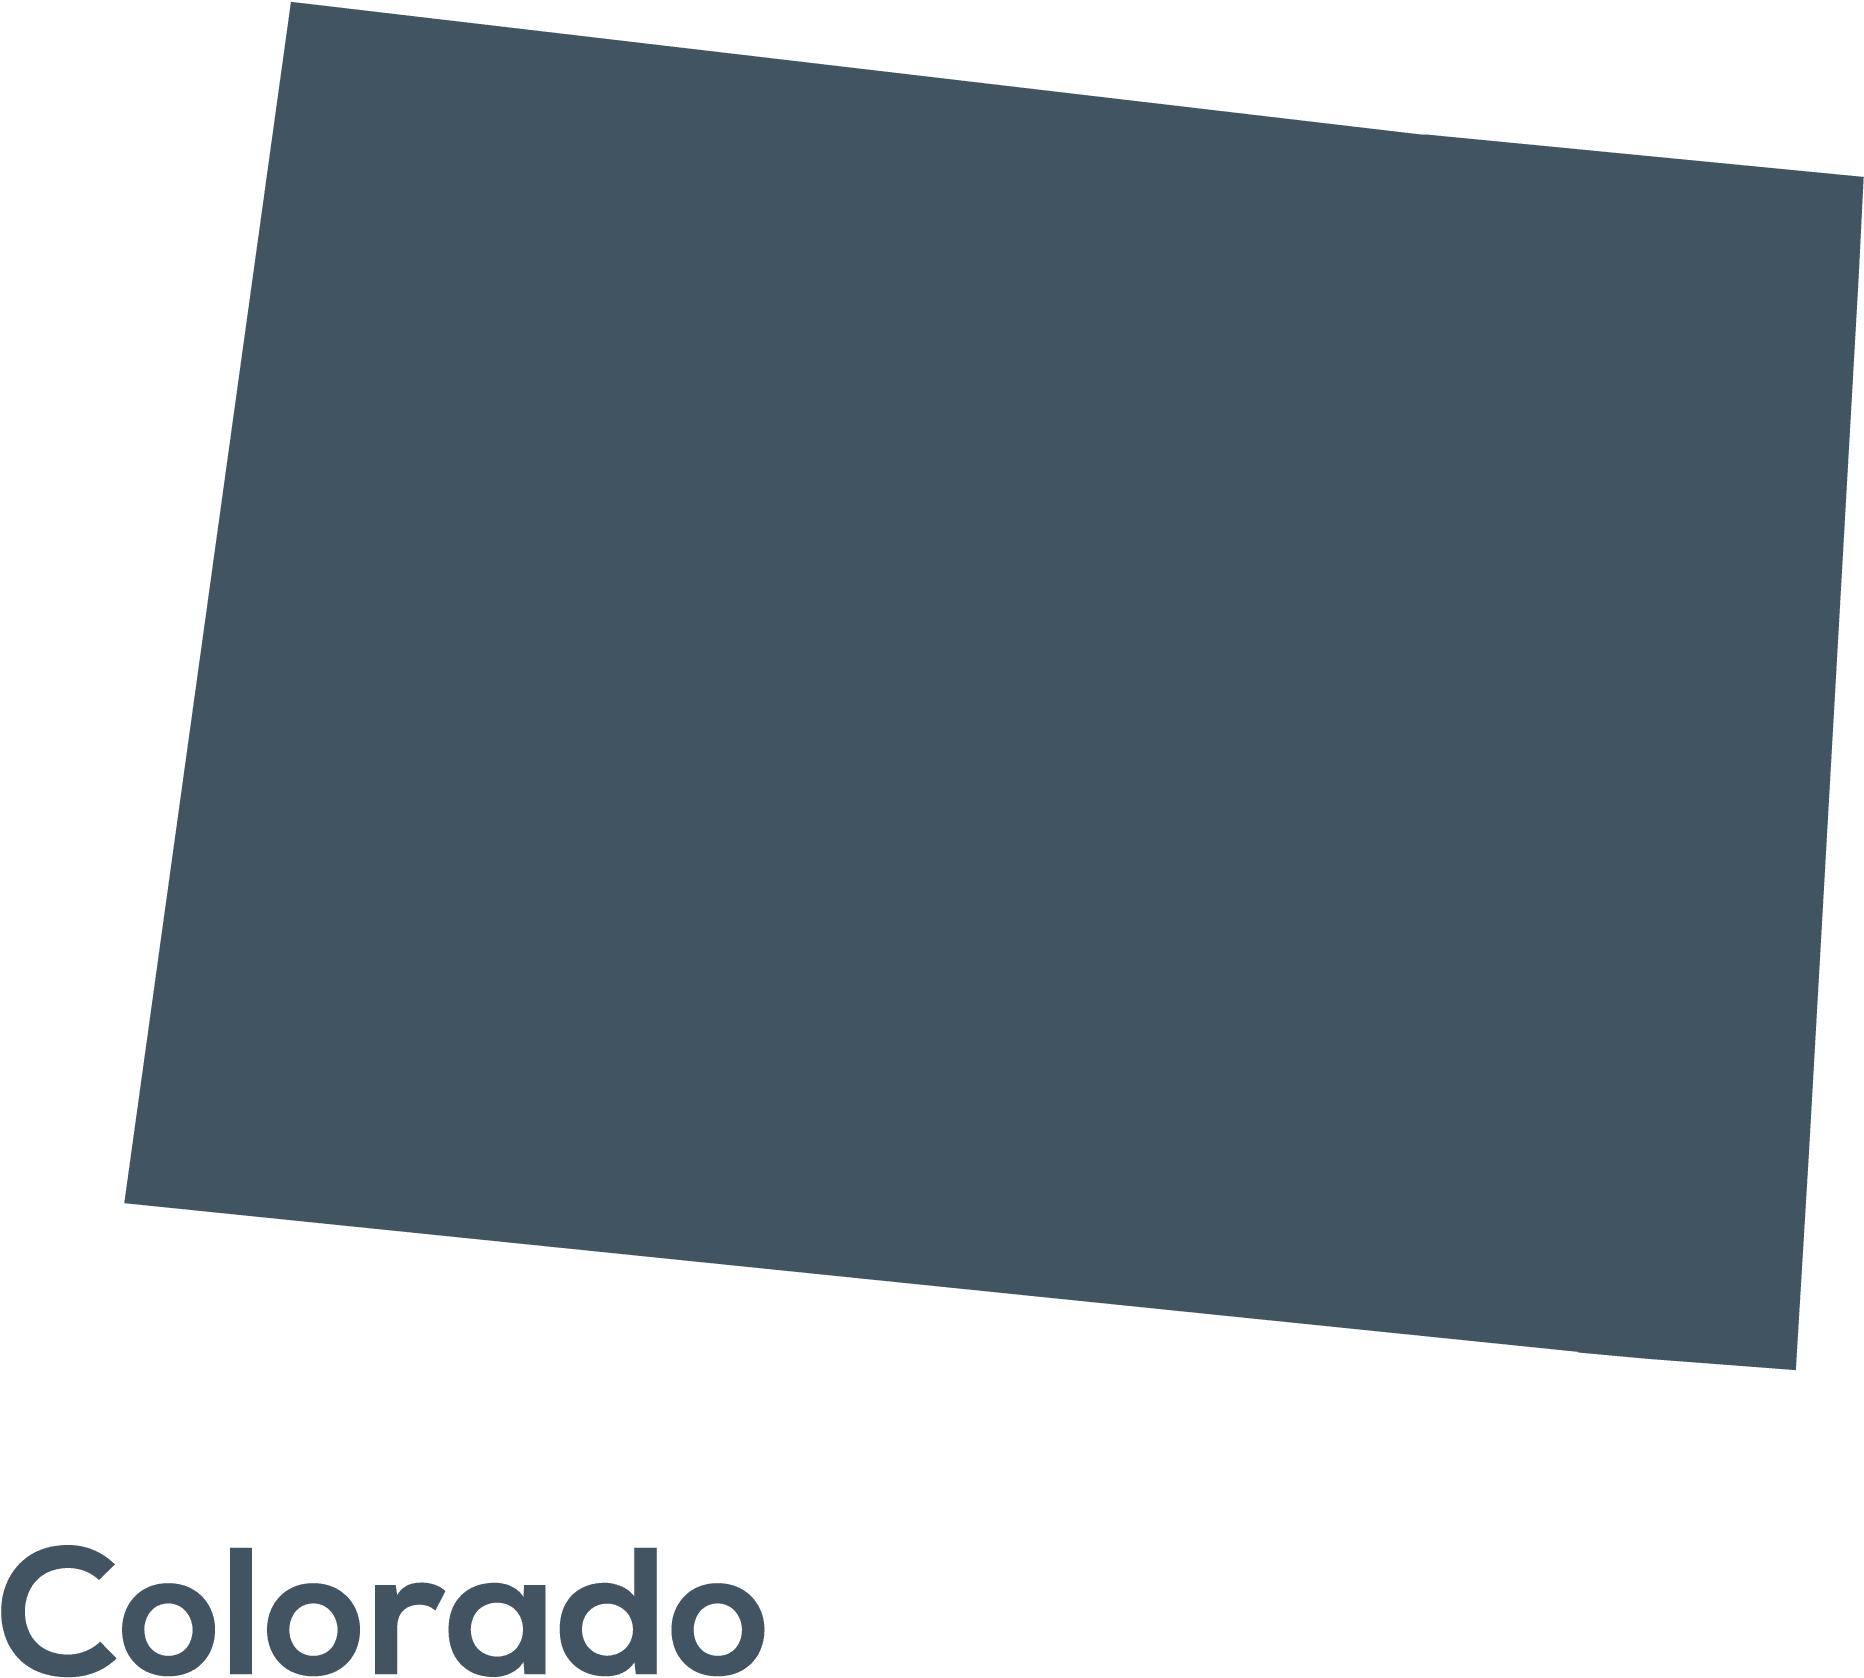 Colorado (1)